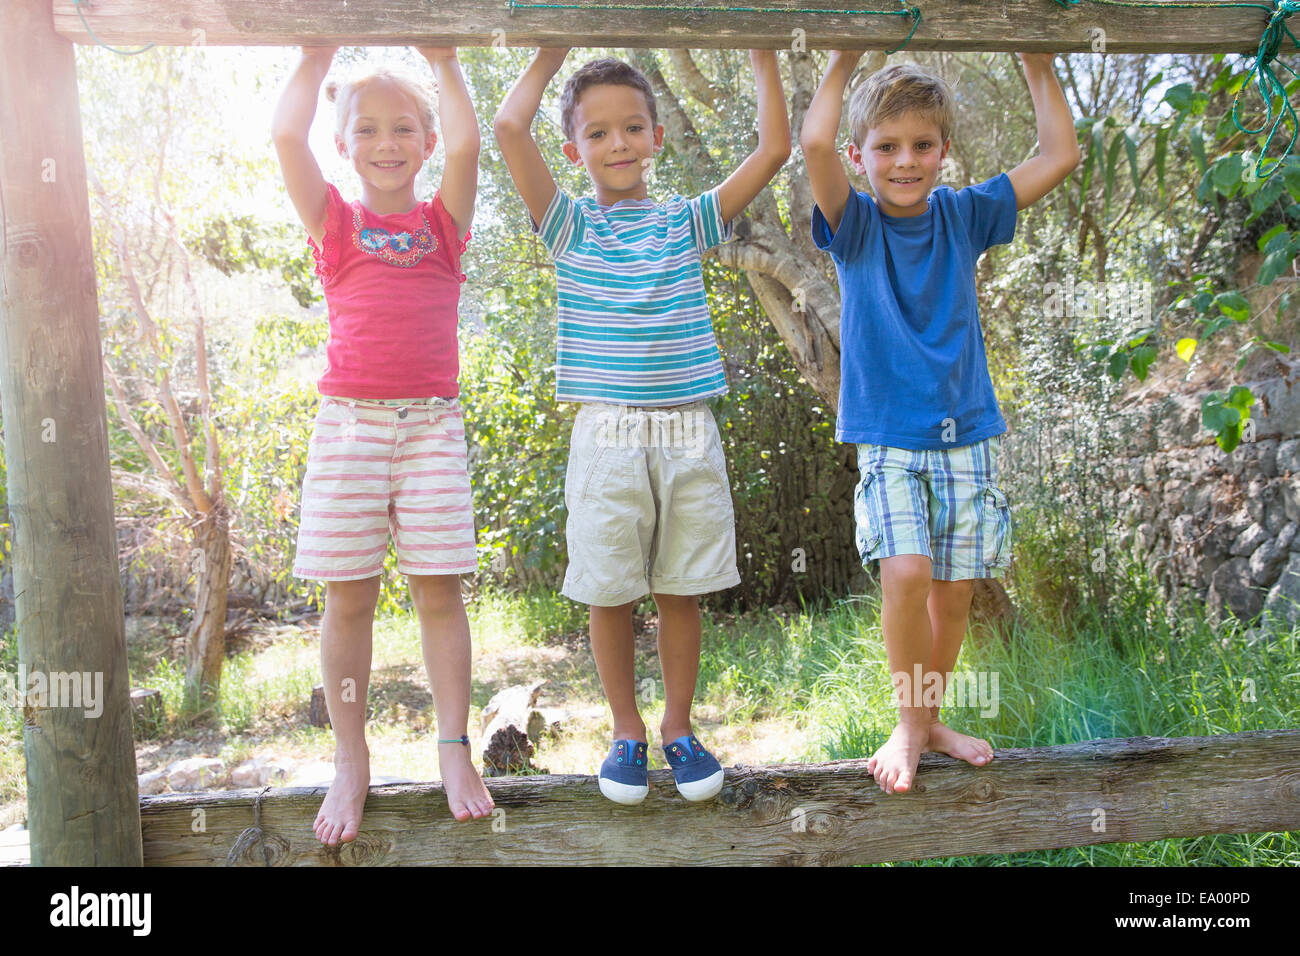 Three children in garden standing on fence Stock Photo